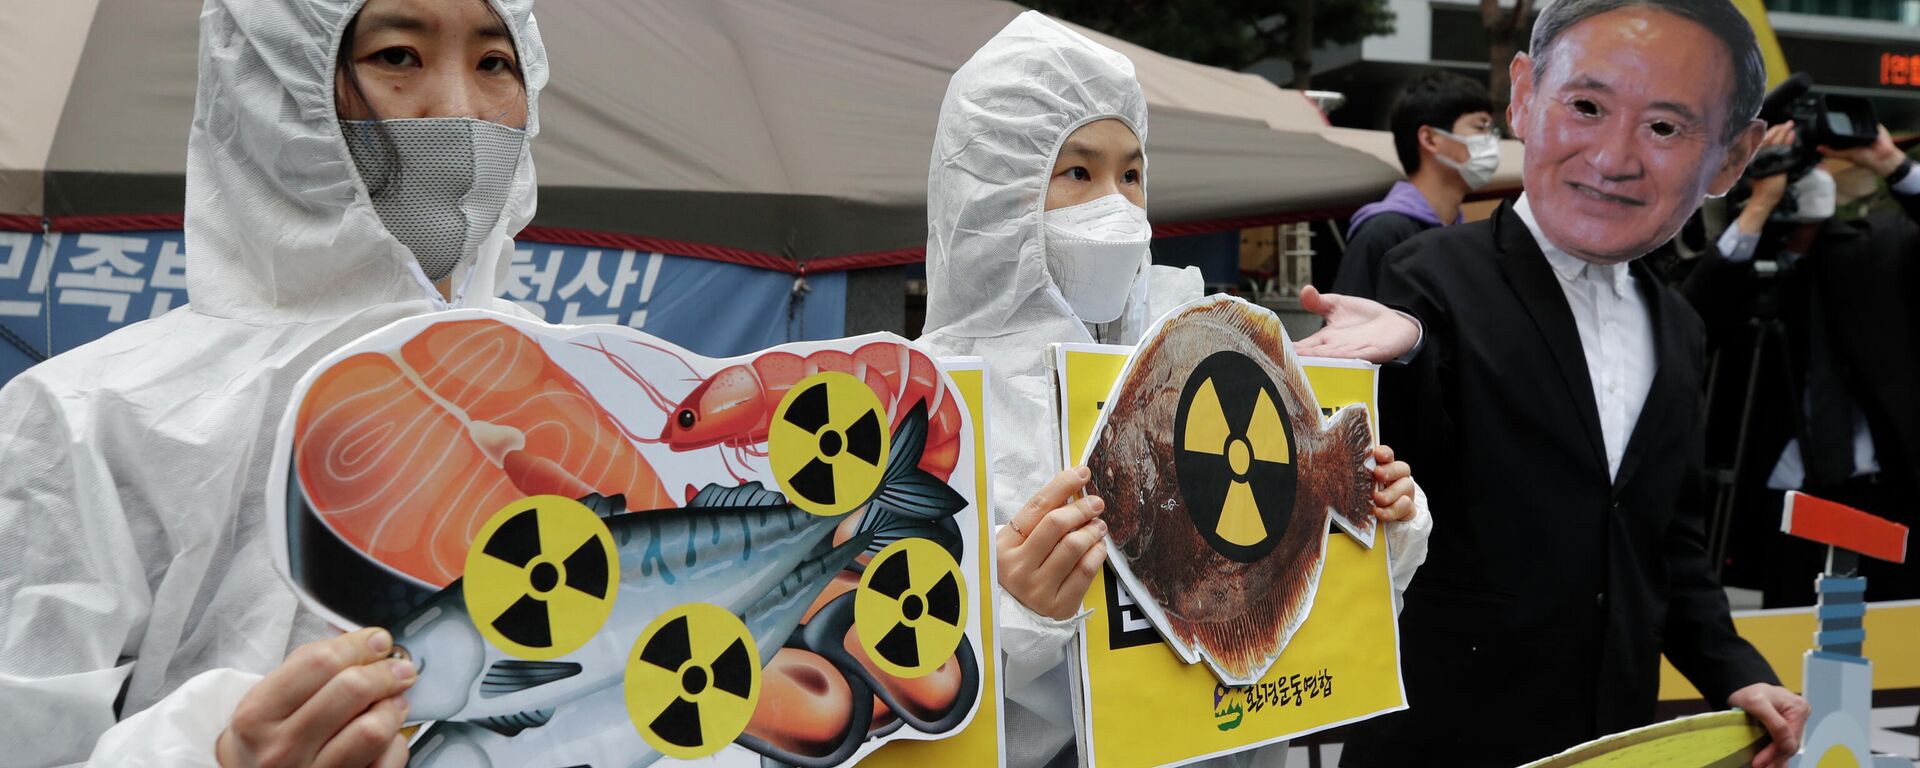 Протест против сброса воды с АЭС Фукусима-1 в океан в Сеуле, Южная Корея - Sputnik Узбекистан, 1920, 14.04.2021